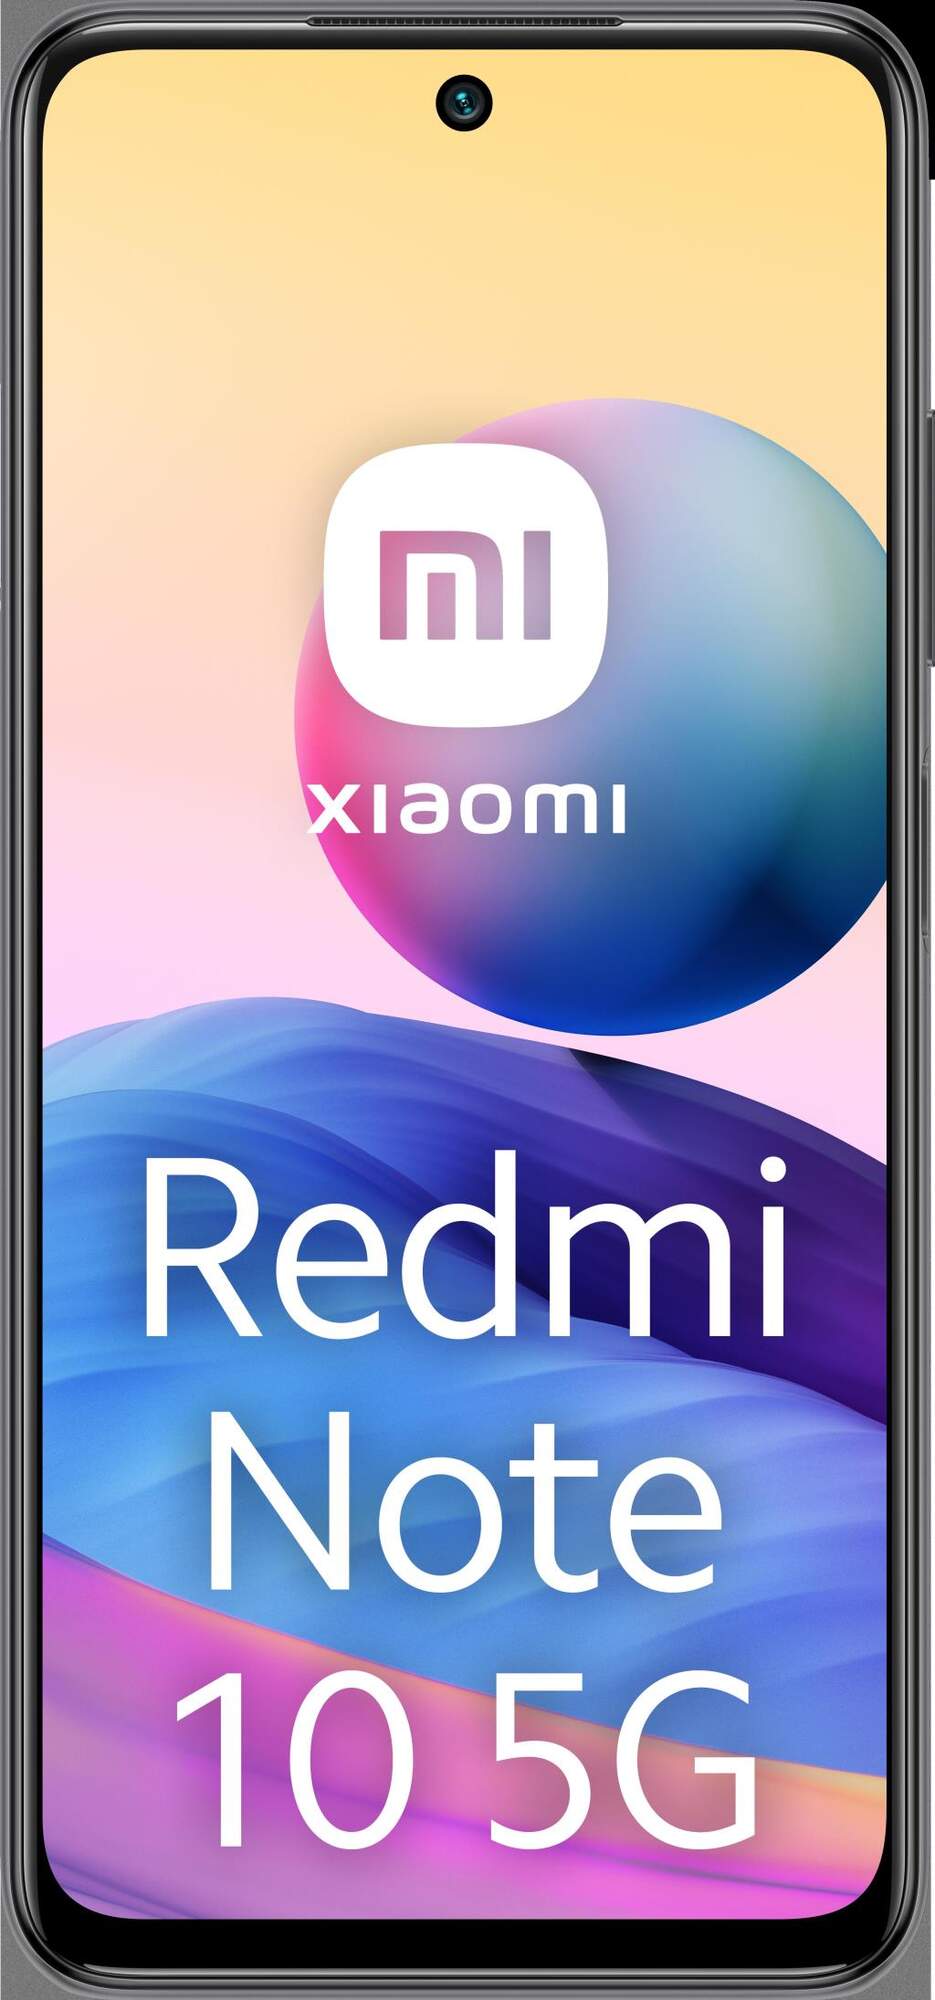 Smartphone Xiaomi Redmi note 10 5g 643 fhd+ amoled 4gb128gb grey 4128gb gris libre 6 5 90hz 128gb+4gb ram 128gb 4gb 6.5 700 5000 4 128 65 1651 65“ 4128